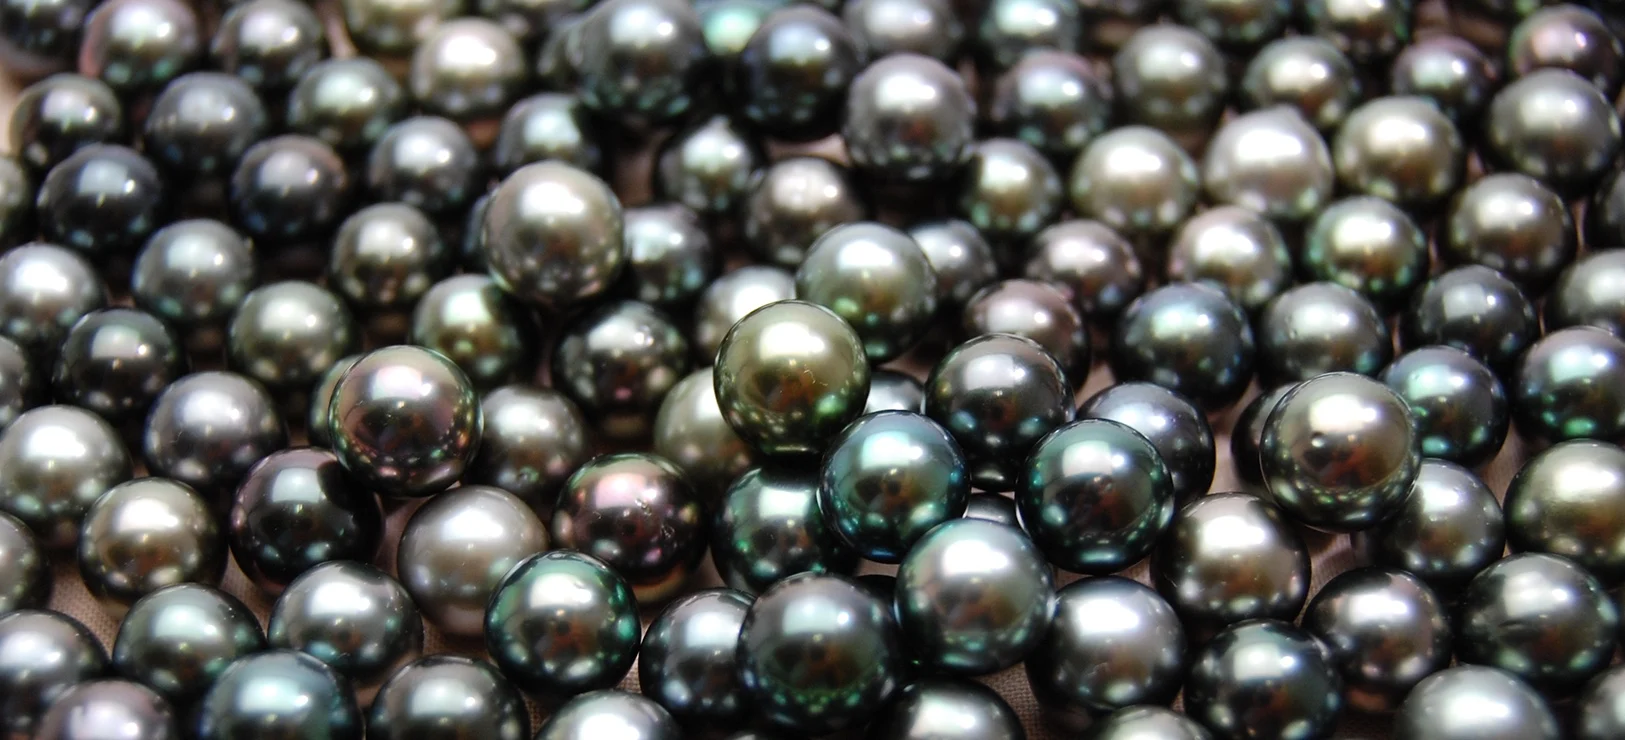 Les perles de Tahiti: les perles rares par excellence - Blogue